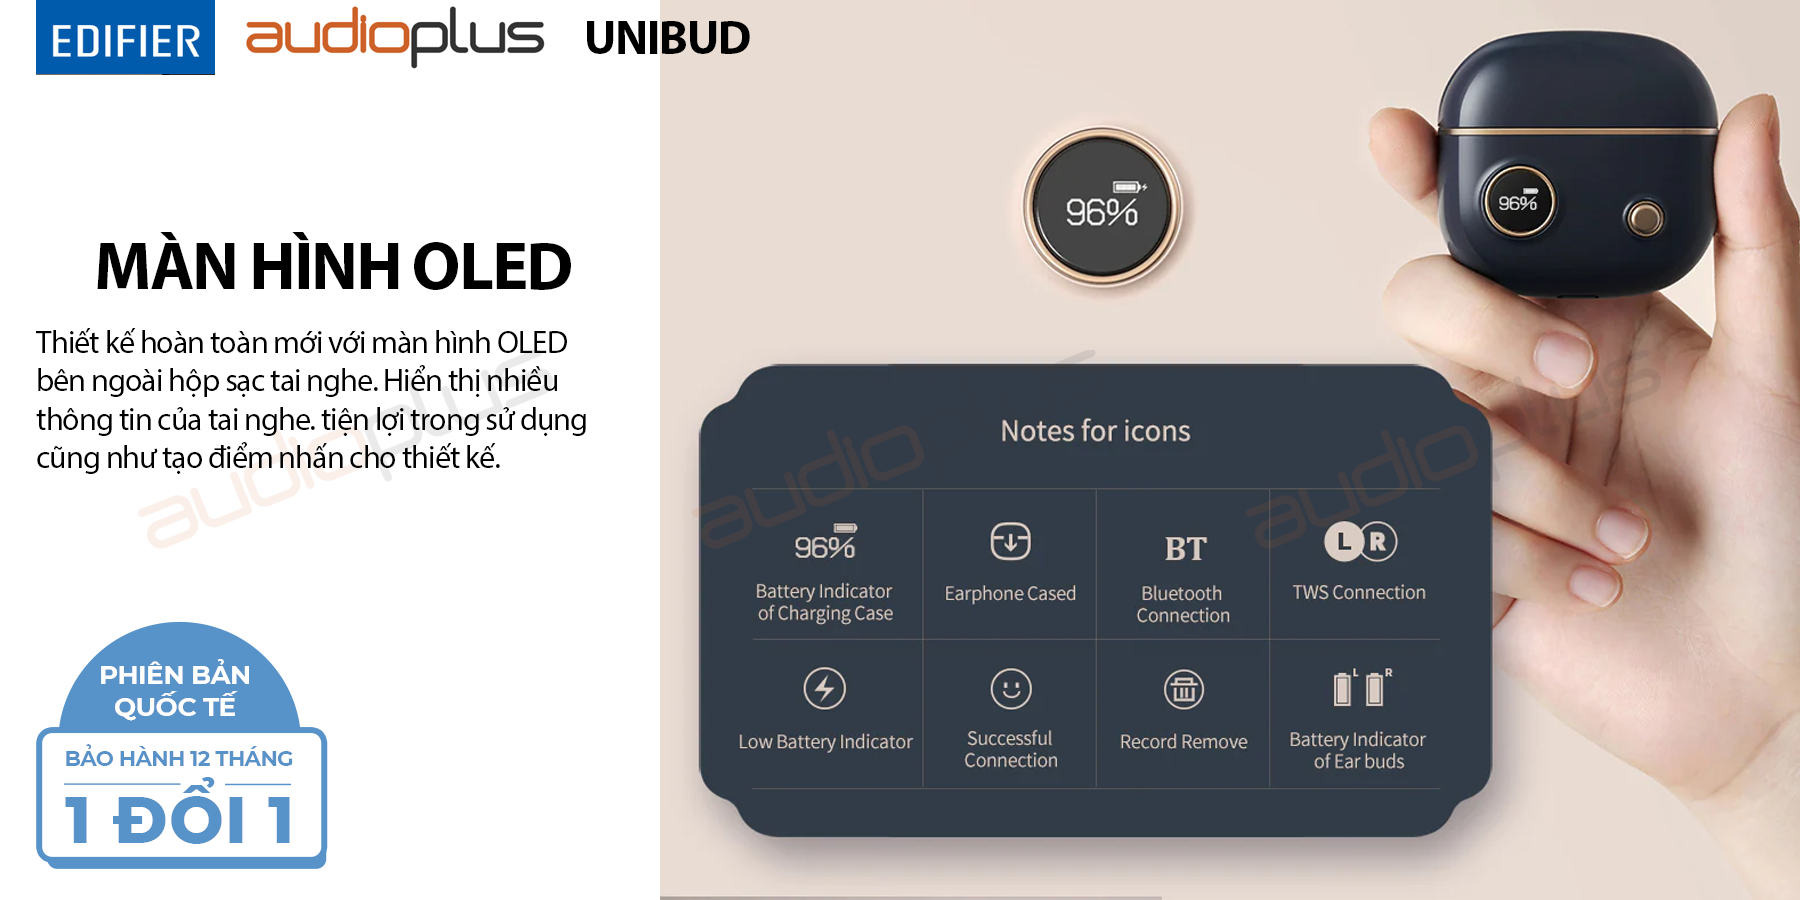 Edifier unibud màn hình oled thiết kế cổ điển